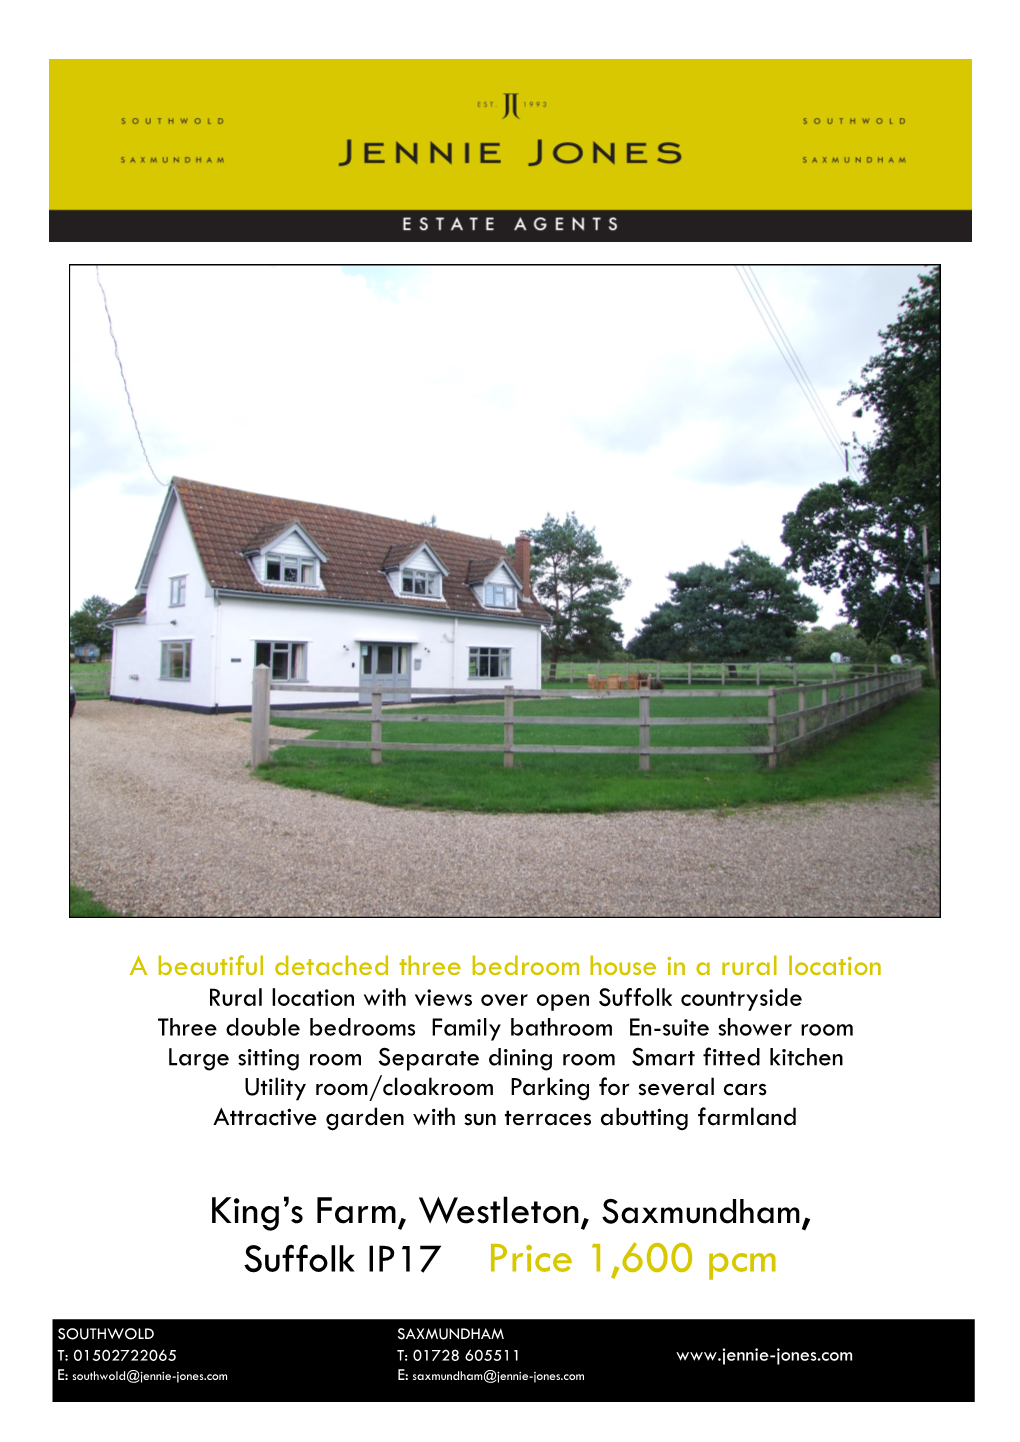 King's Farm, Westleton, Saxmundham, Suffolk IP17 Price